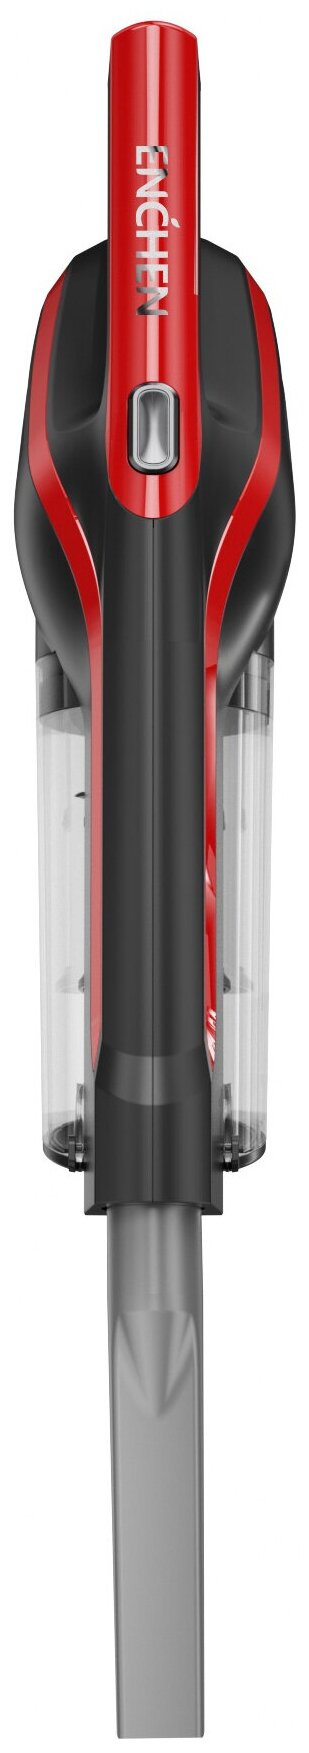 Ручной вертикальный пылесос Enchen Vacuum Cleaner V2 (Black/Red) DX700/DX700S / пылесос с контейнером для сухой уборки дома и мебели черный